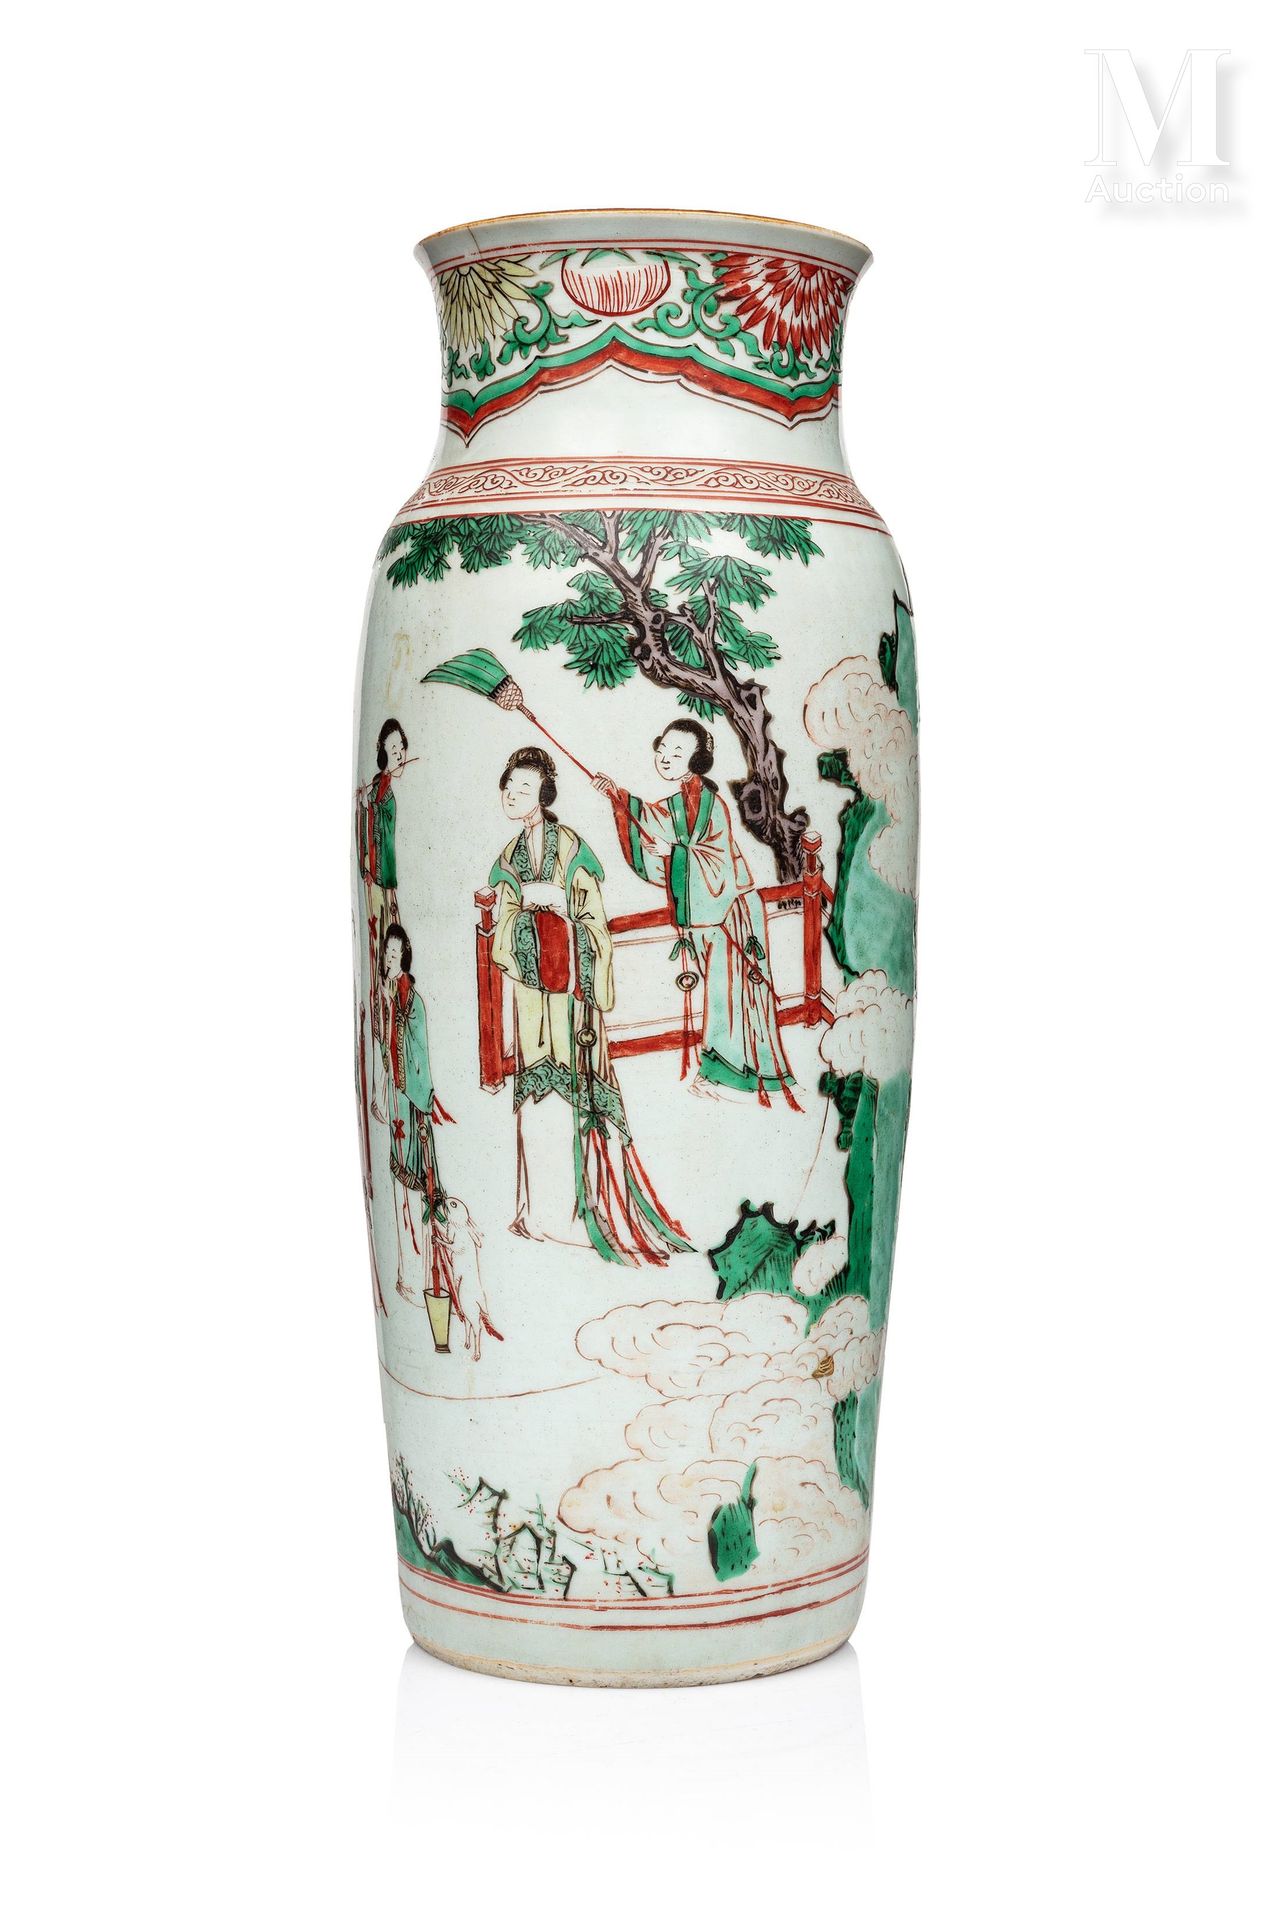 CHINE, Dynastie Ming 
短颈卷轴形瓷瓶，白地吴彩装饰，可能描绘了西王母在她的随从和两位神仙的陪同下，在云雾缭绕的山间。未上釉的底座。



&hellip;